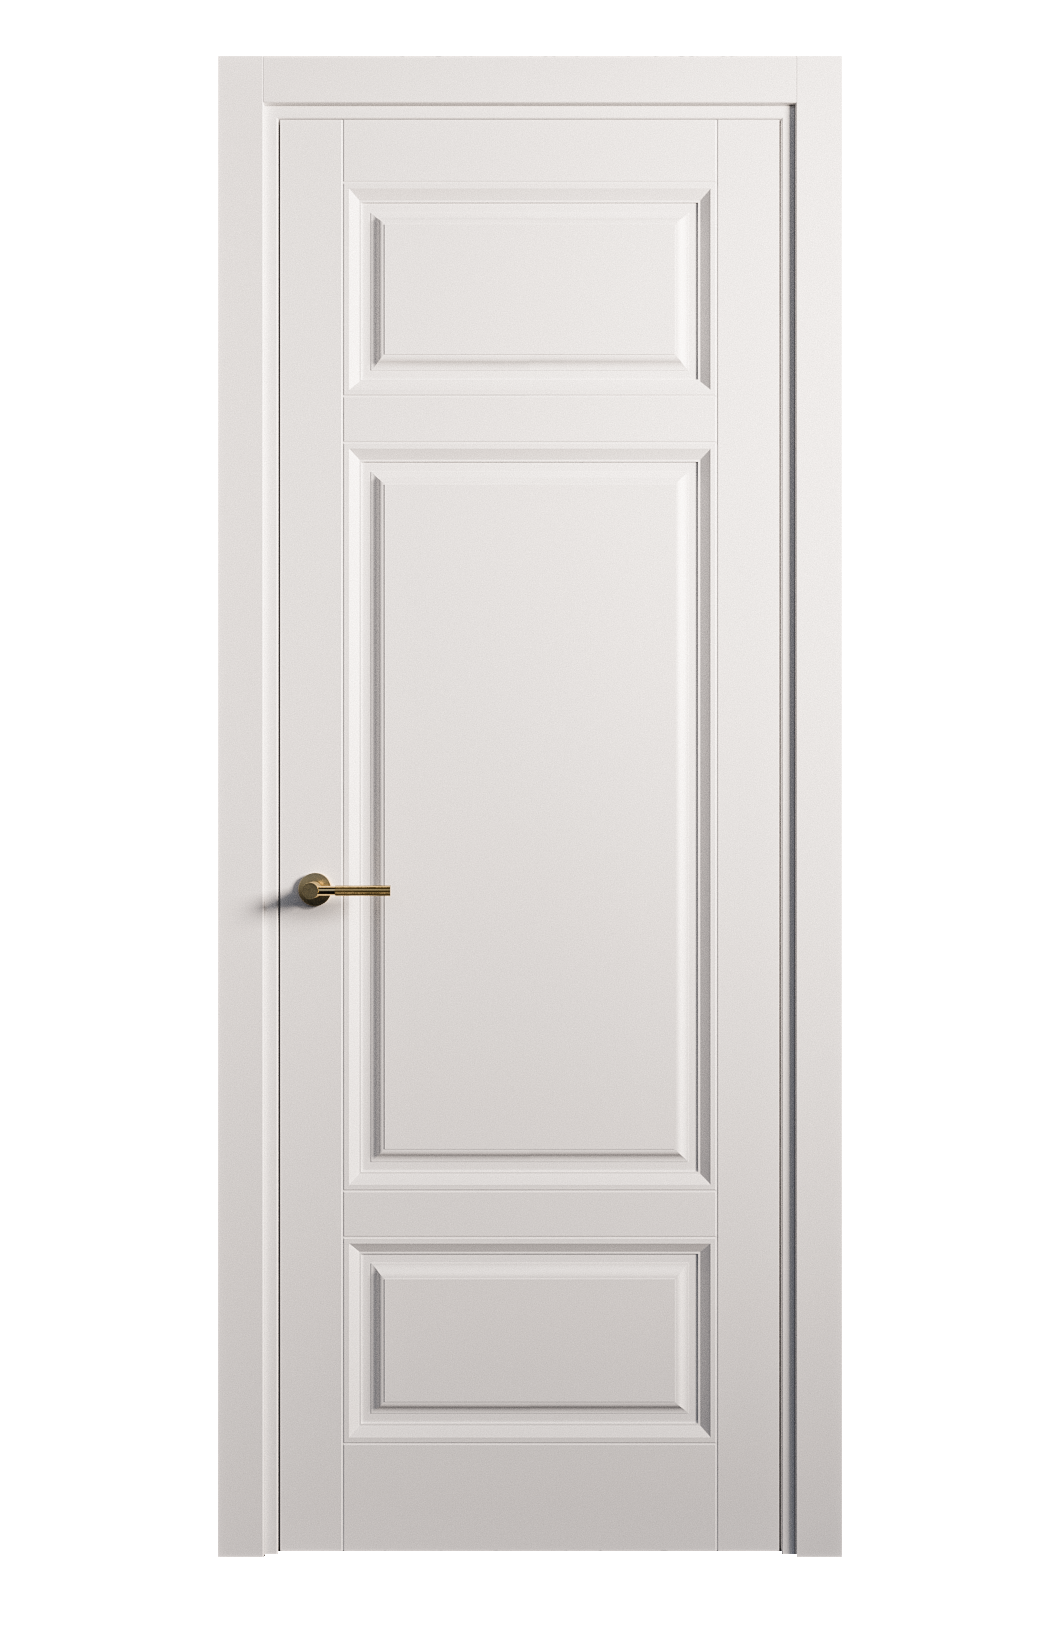 Межкомнатная дверь Venezia-5 глухая эмаль ral 9003 25908